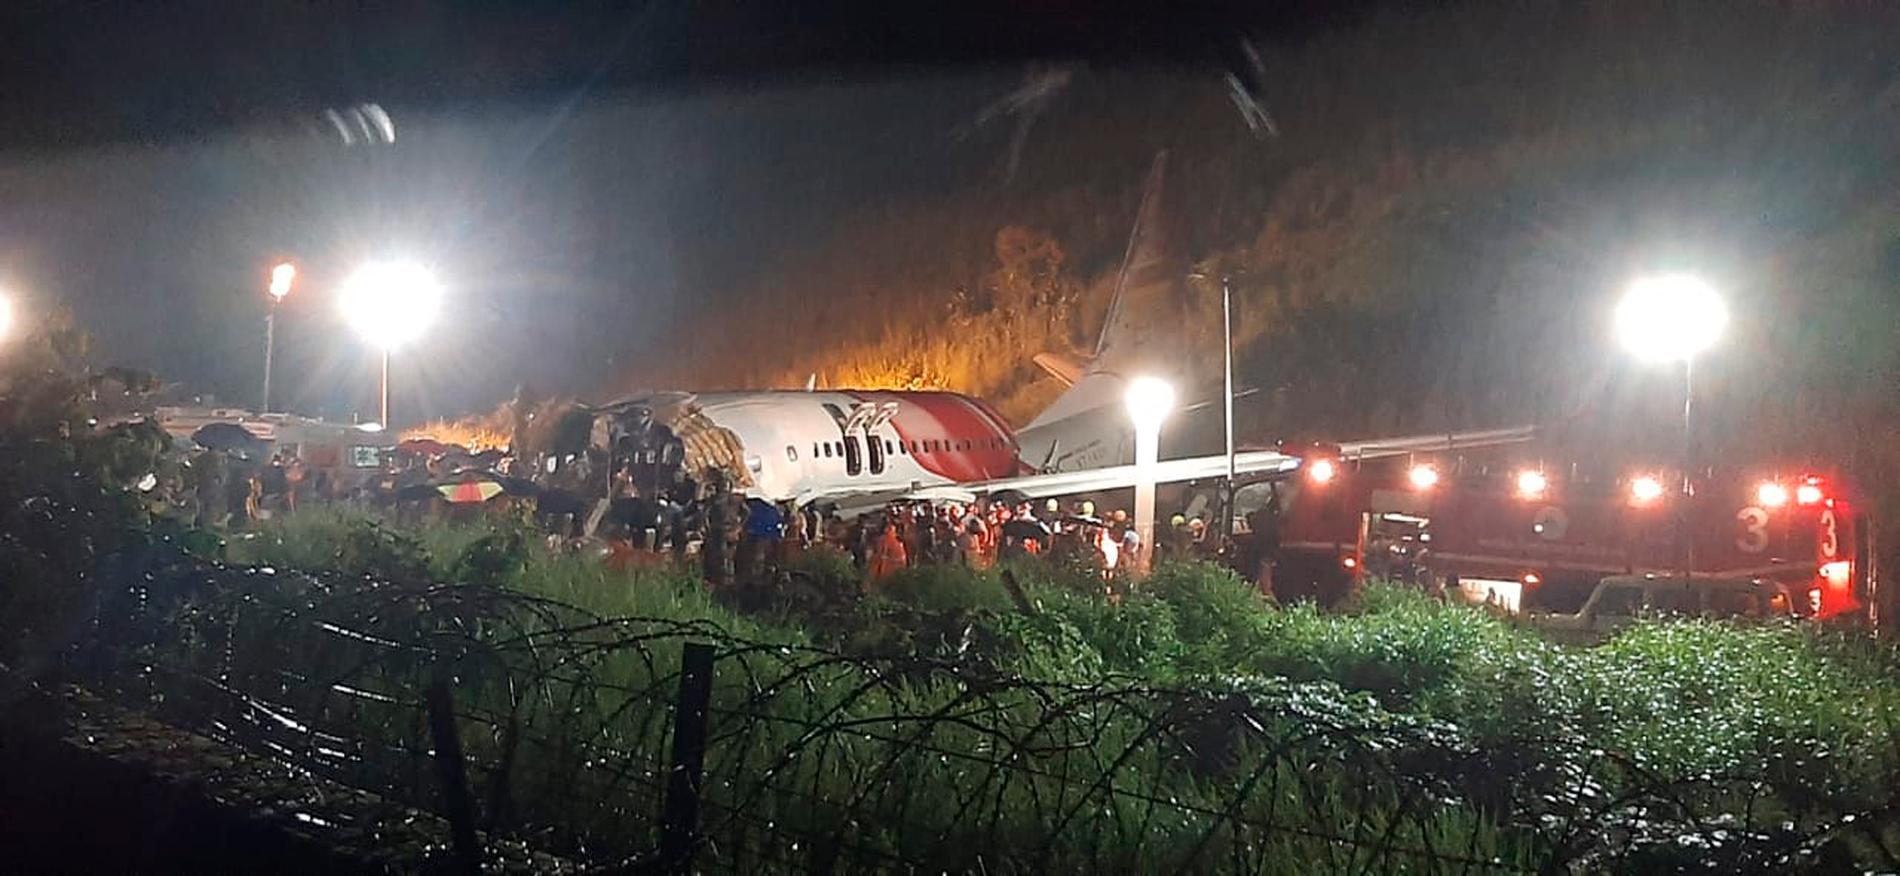 Air India-planet bröts i två delar efter avåkningen.